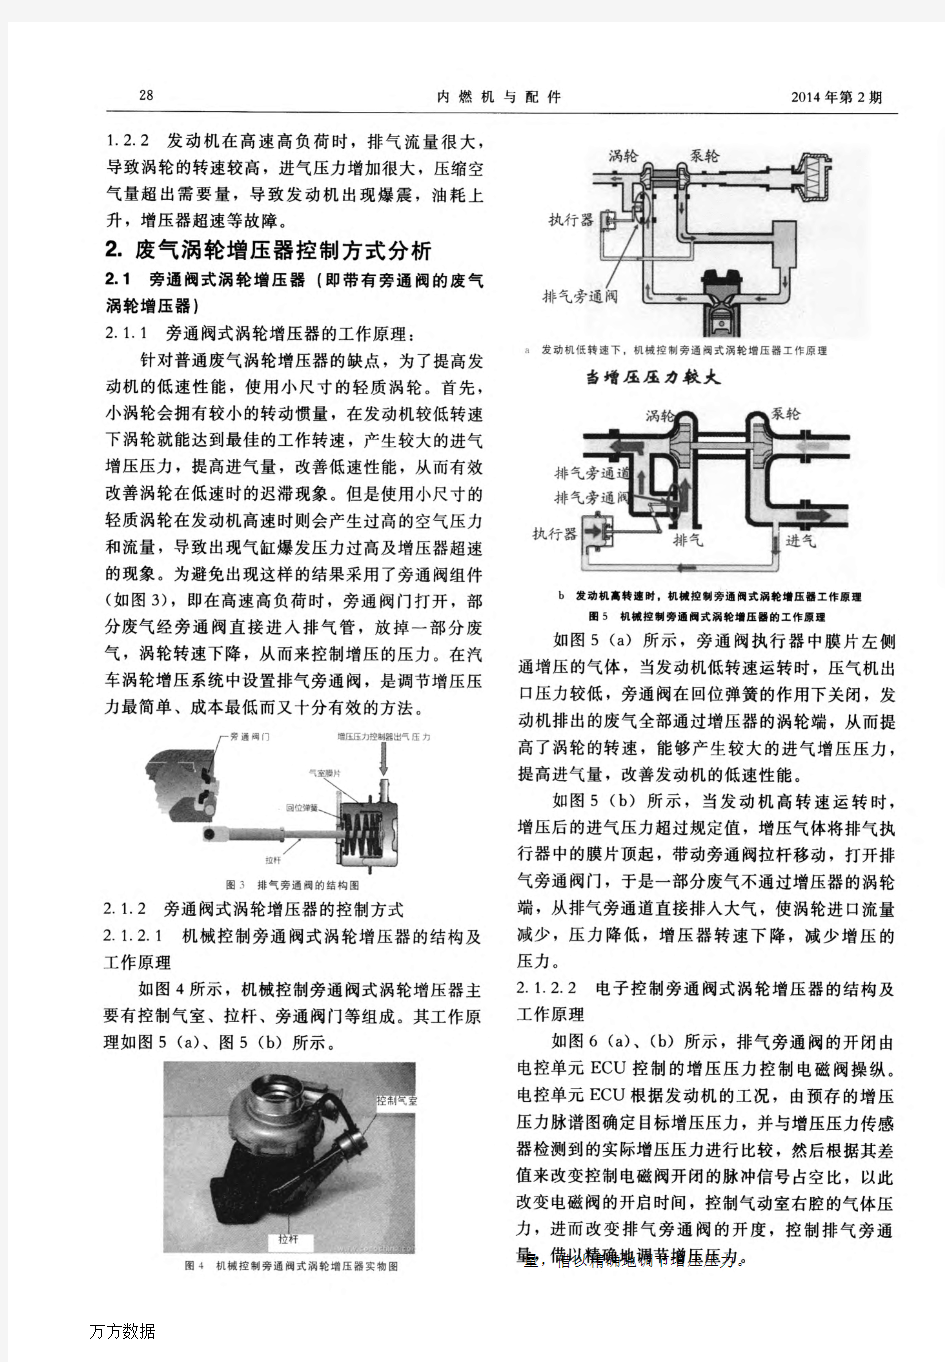 发动机废气涡轮增压器控制方式分析